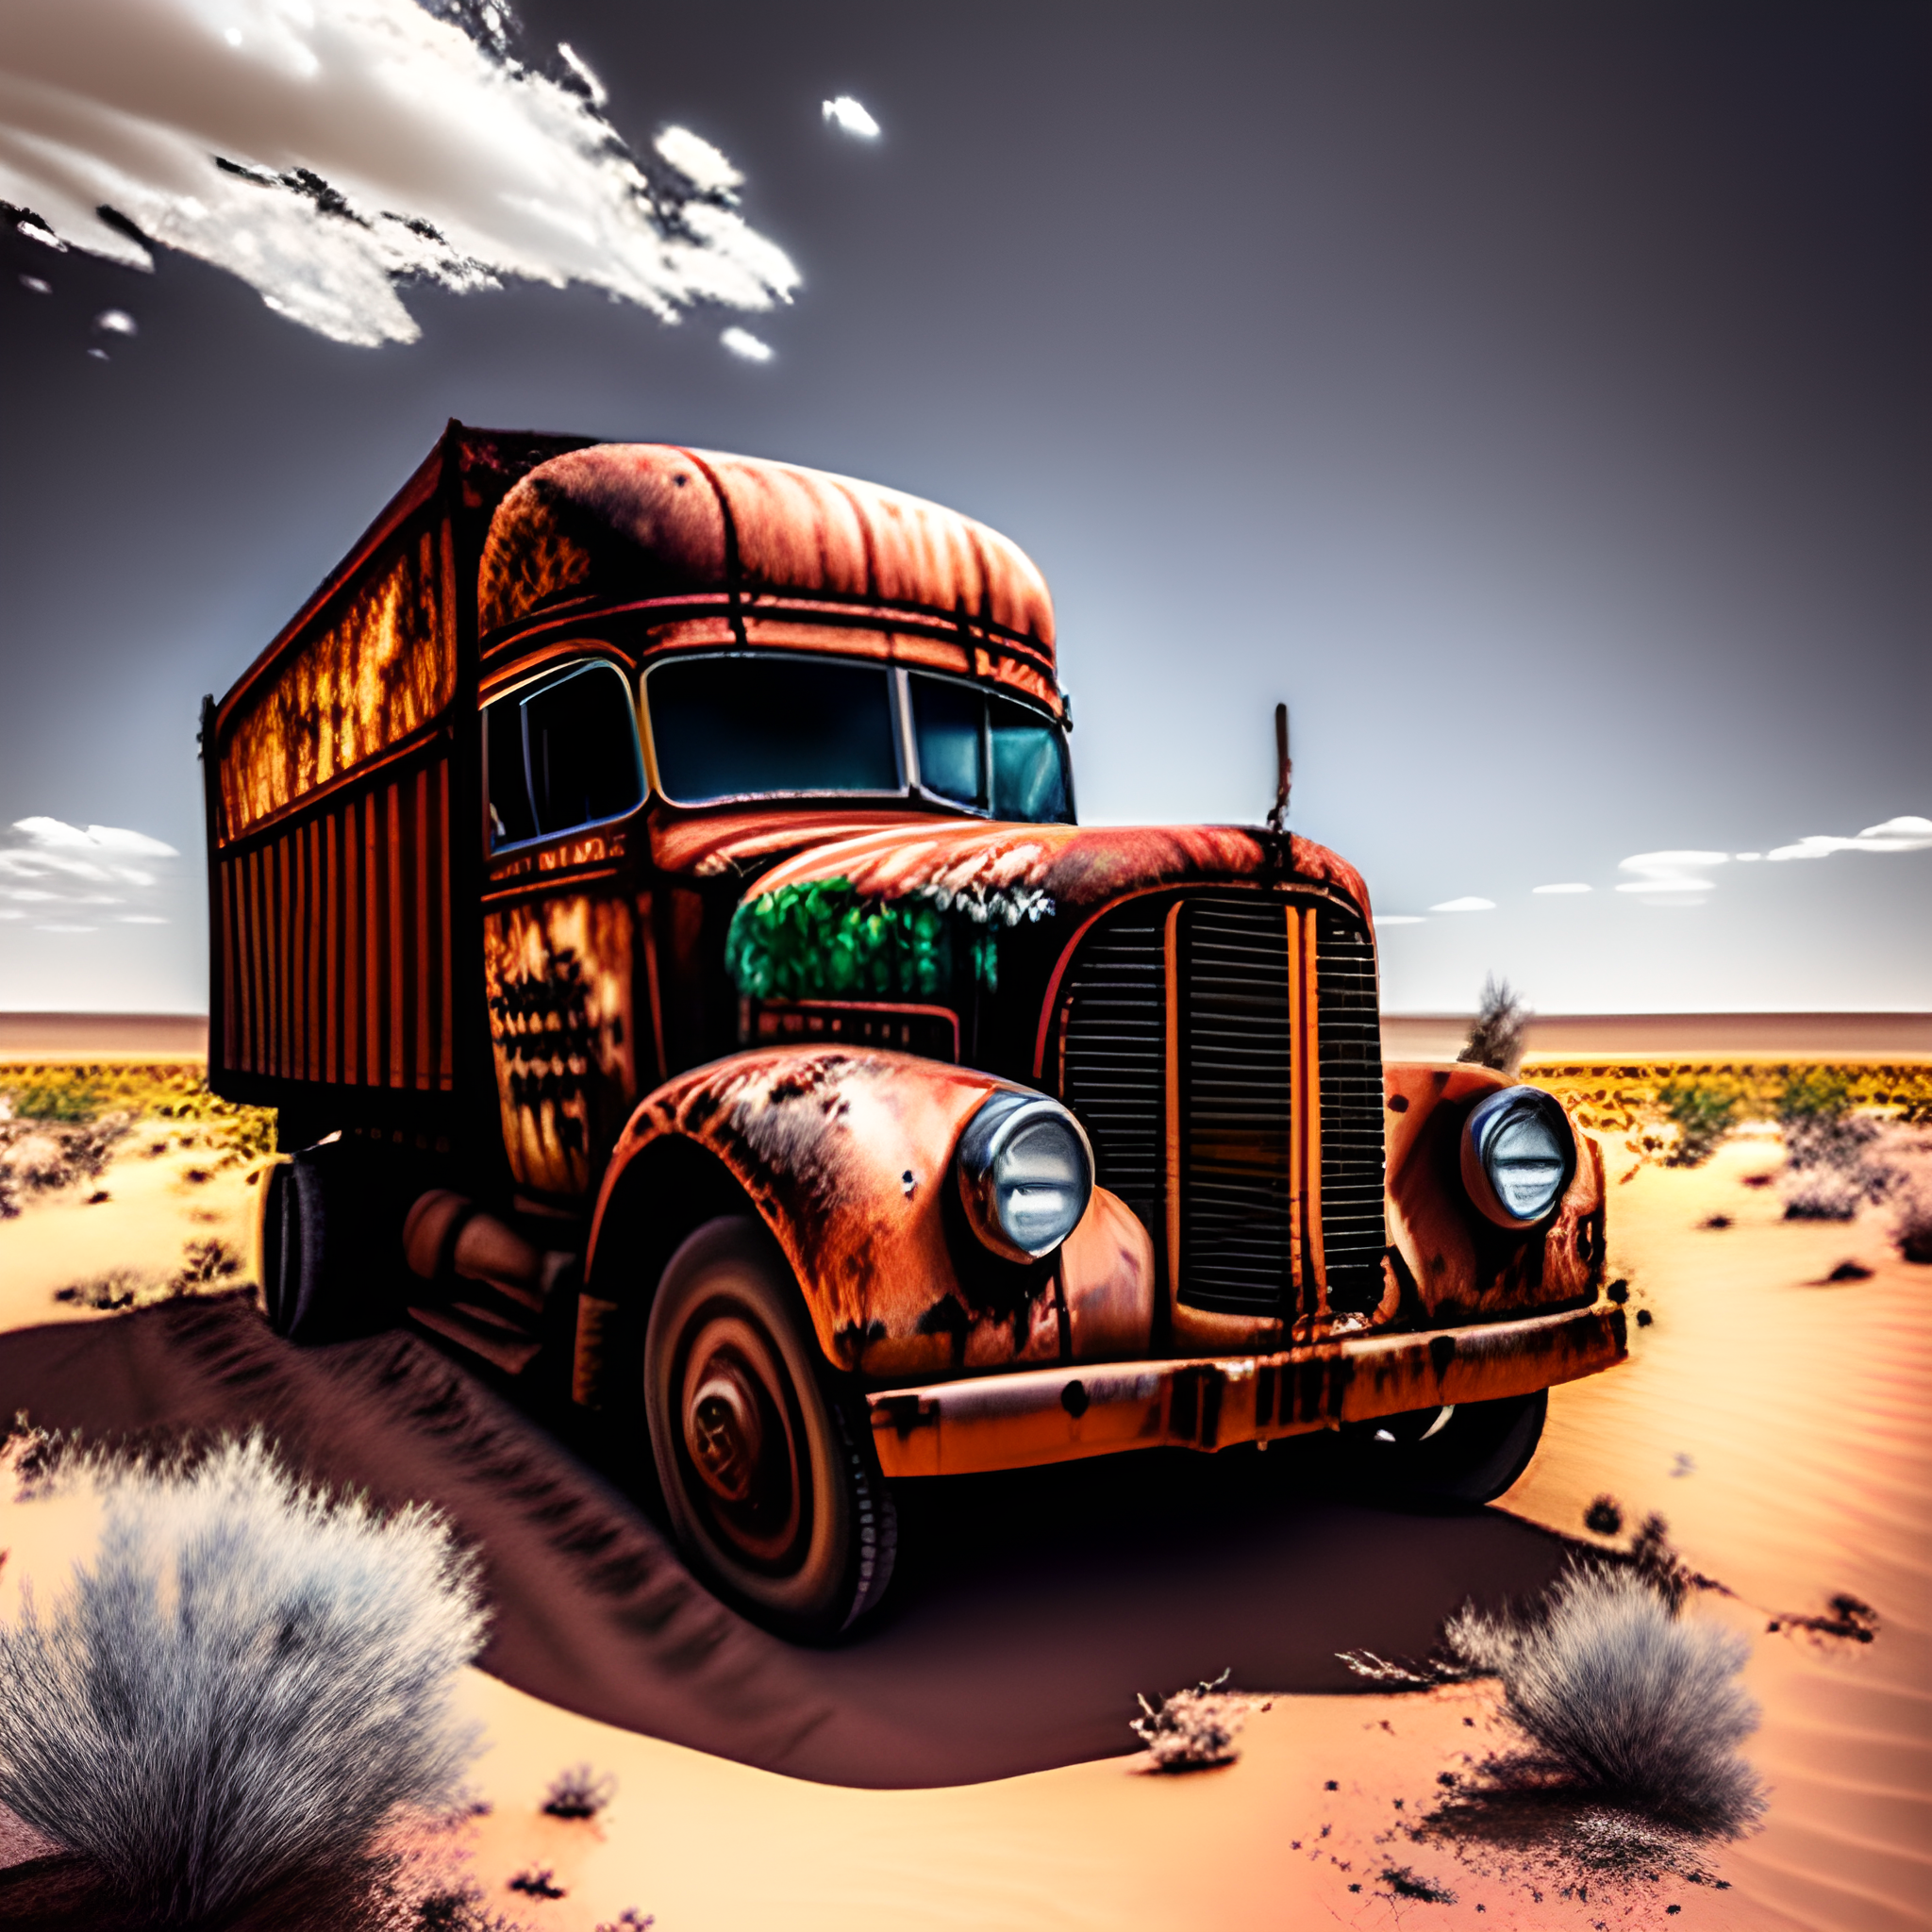 Abandoned Rusting Truck in Desert